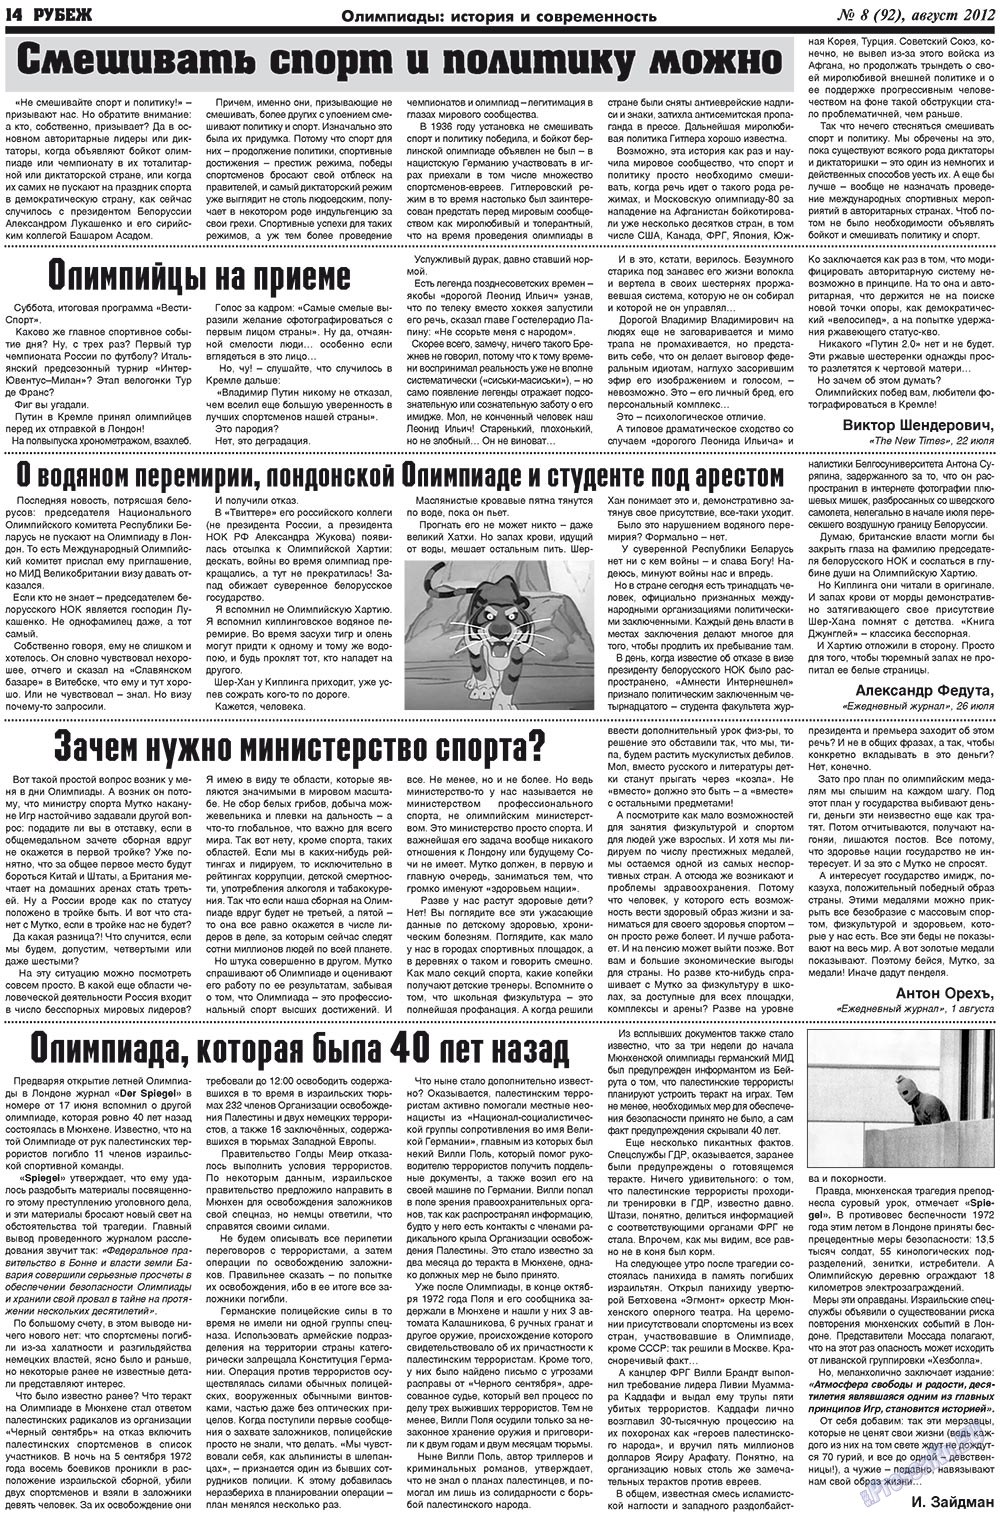 Рубеж (газета). 2012 год, номер 8, стр. 14